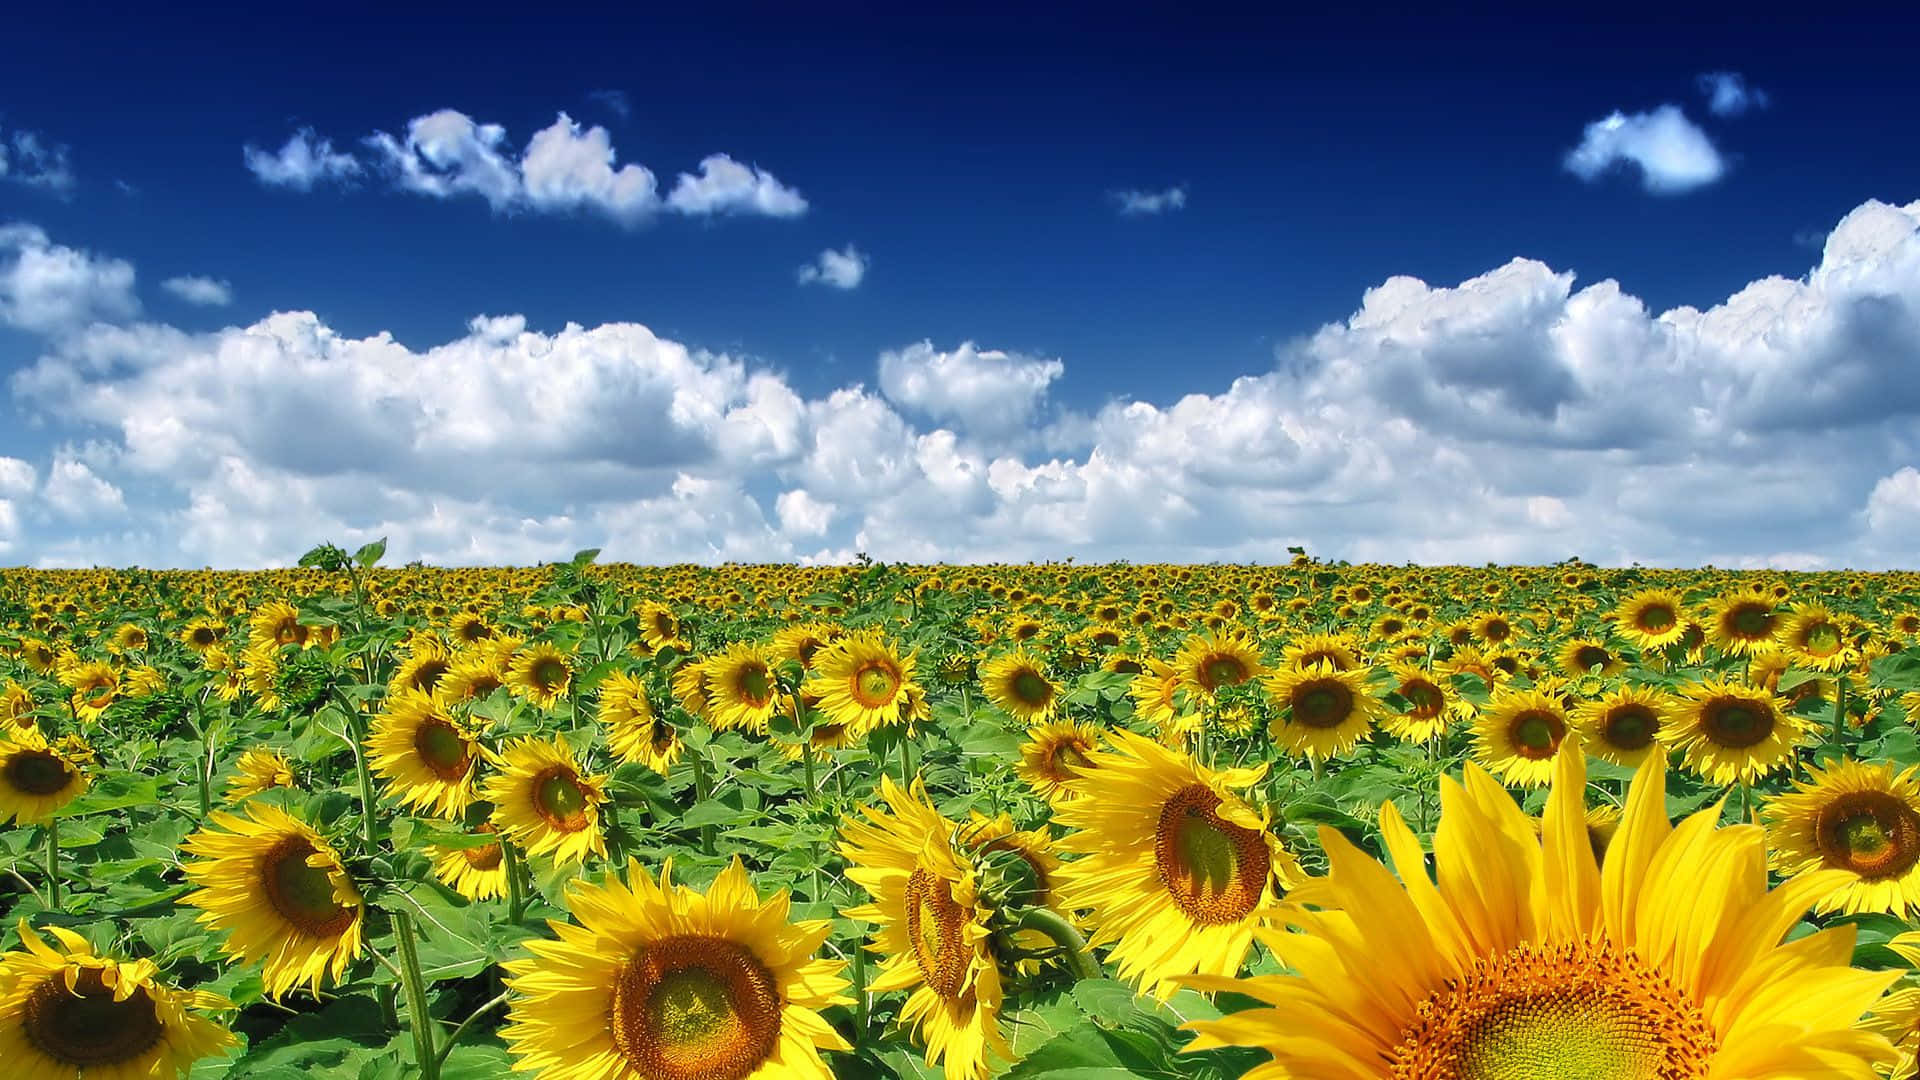 1920x1080 Sunflower Field In Summer Background